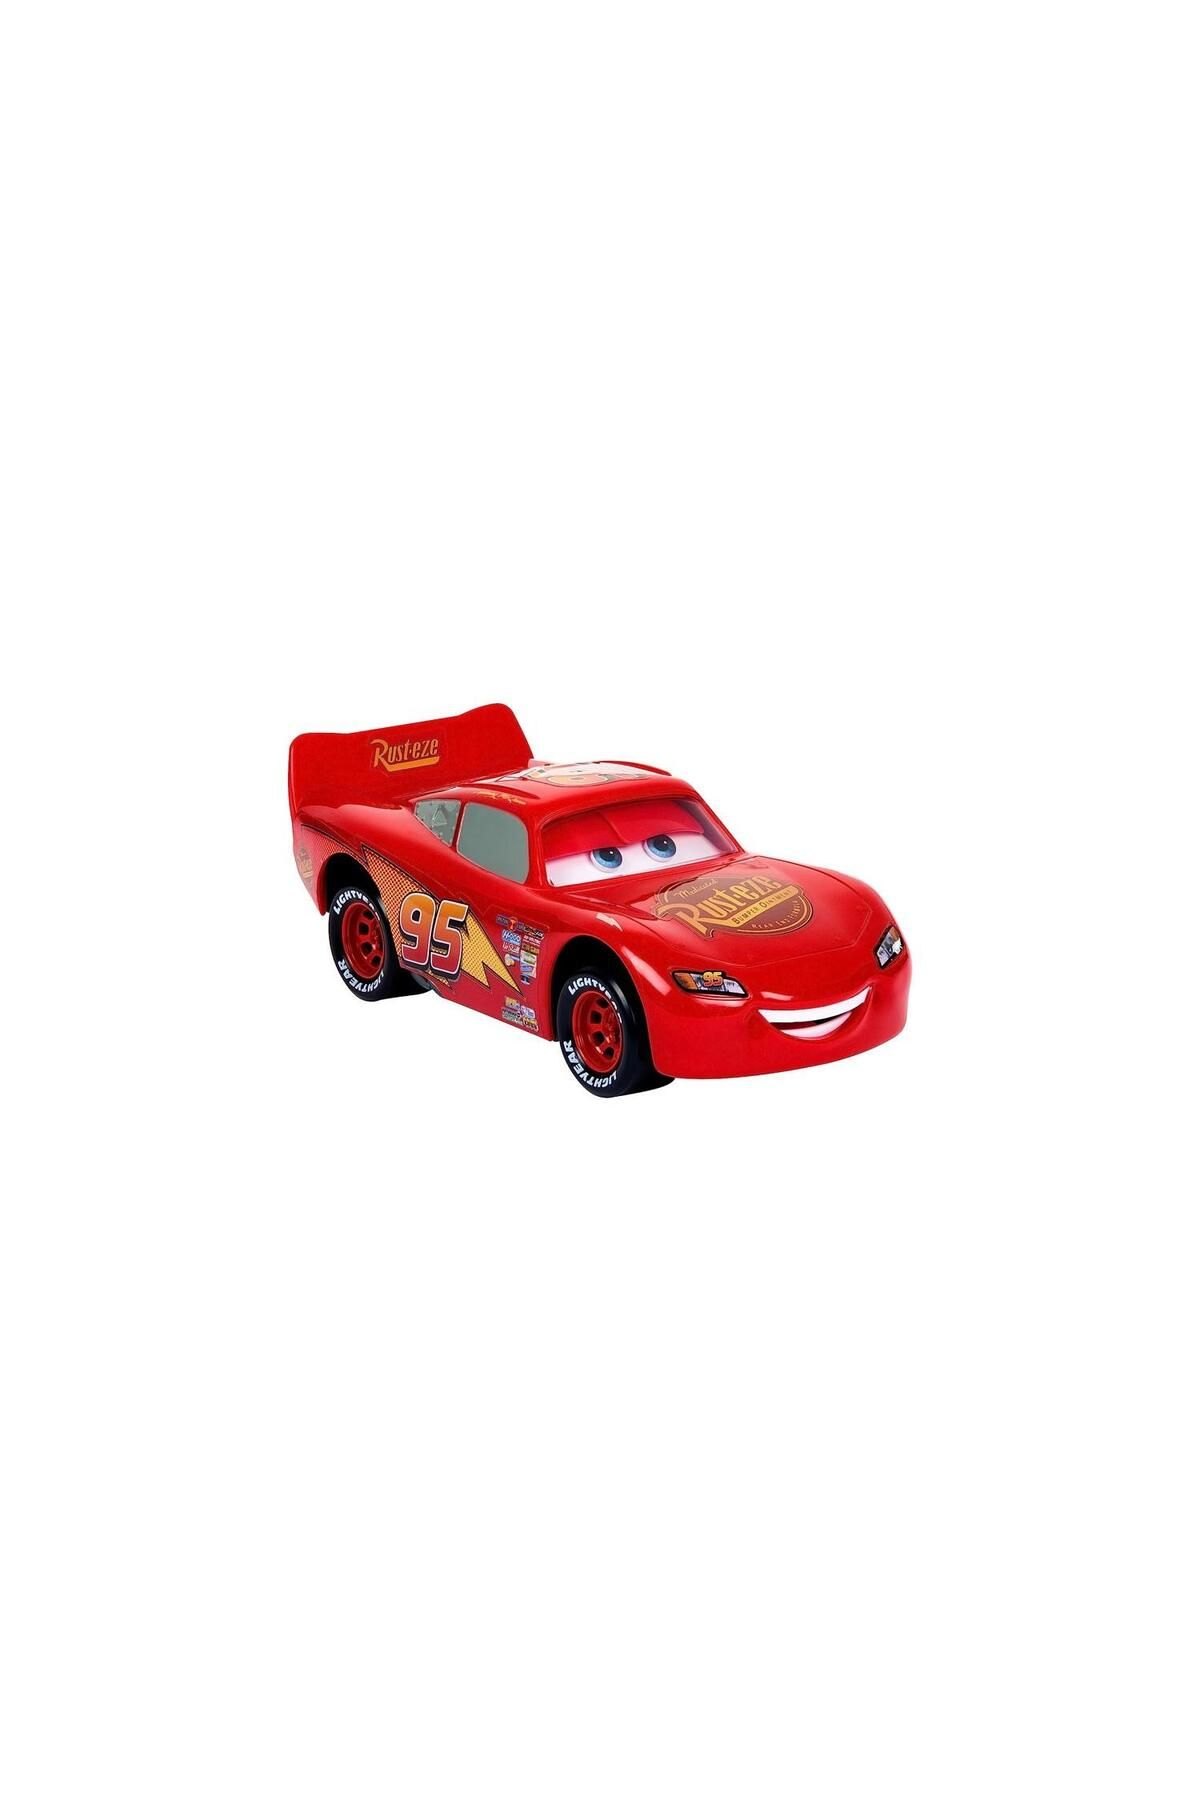 Cars Mattel Cars Hareketli Dostlar Şimşek McQueen